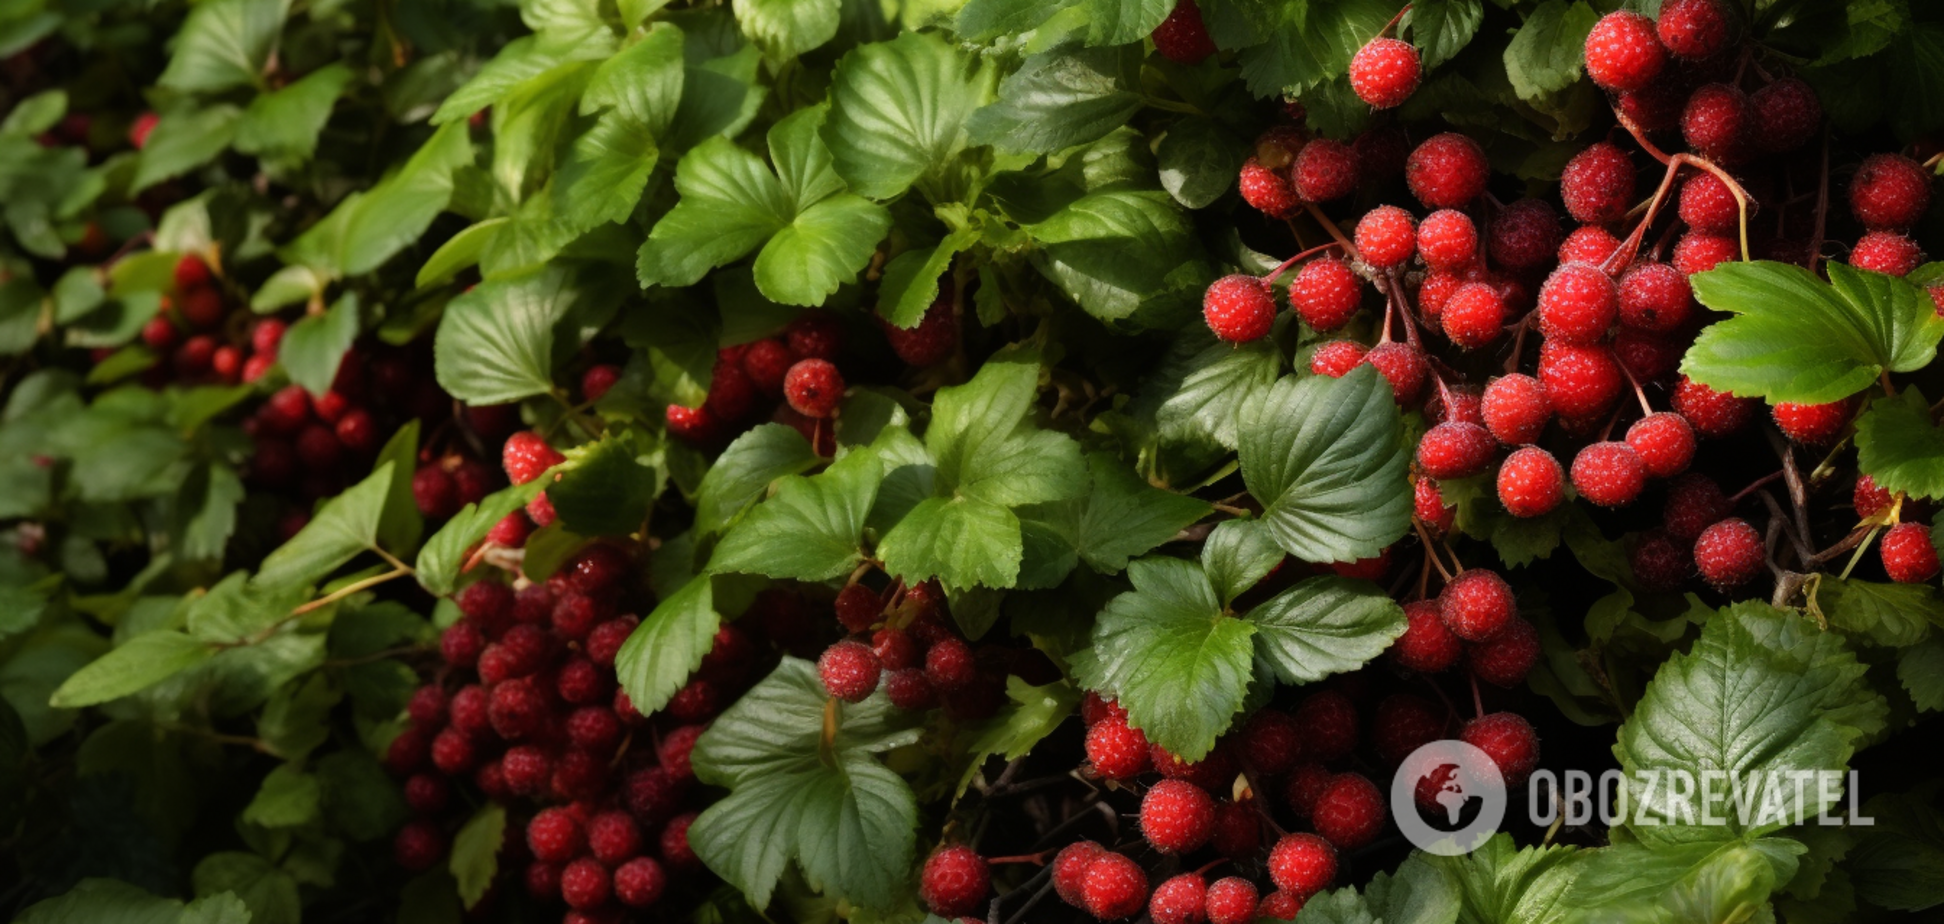 Уберите подальше от других растений: какие ягоды притягивают на огороде вредителей